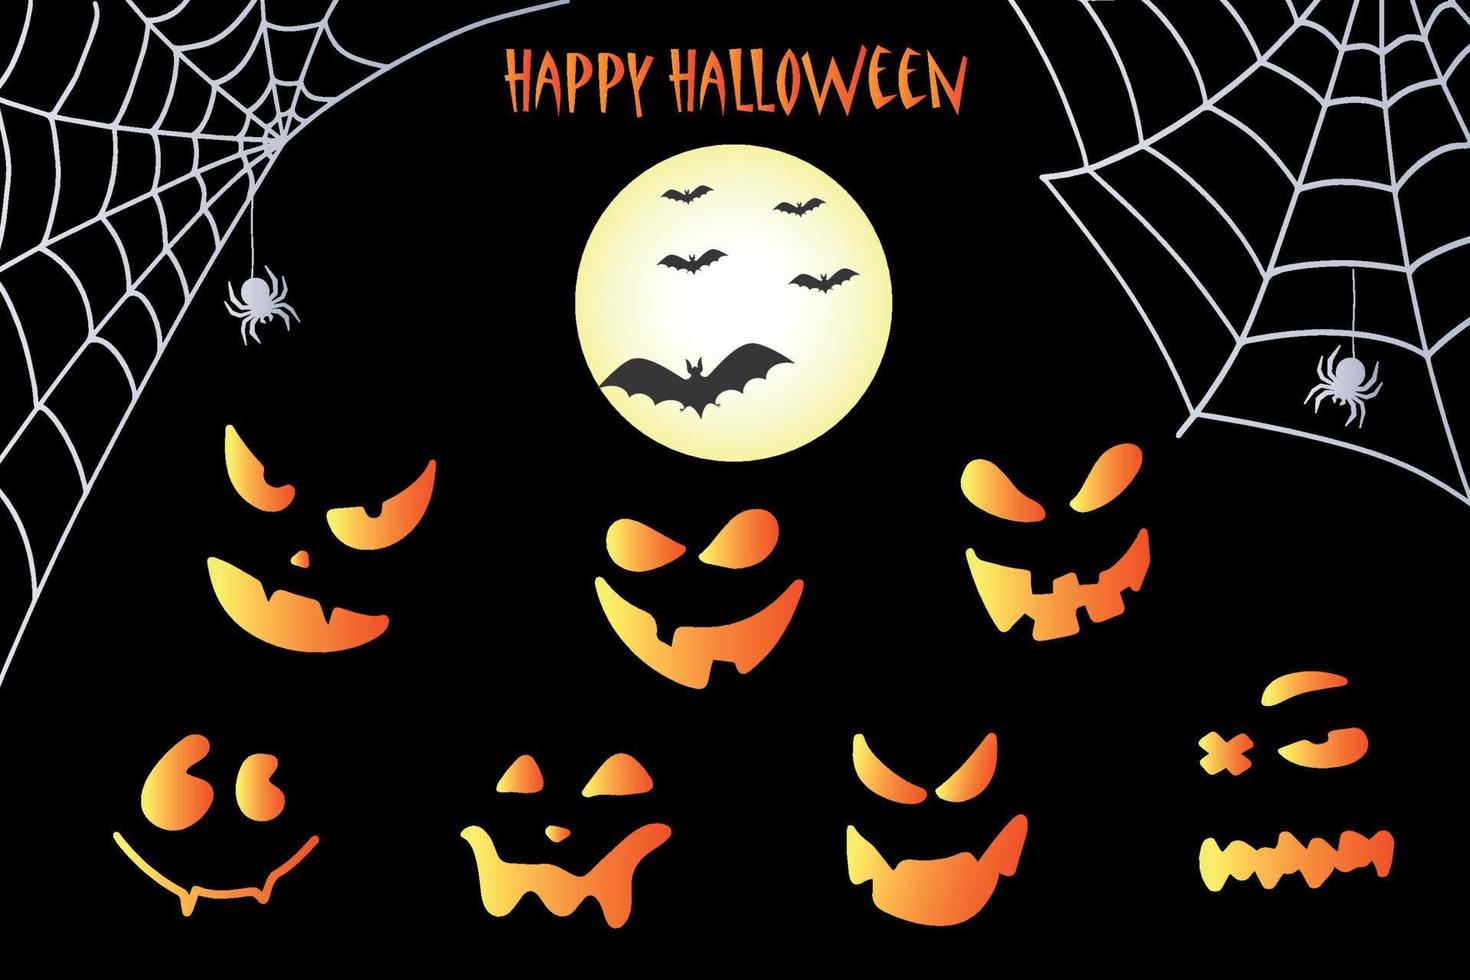 murciélago, red y calabazas. fondo de halloween con murciélagos y calabazas dibujadas a mano. vector